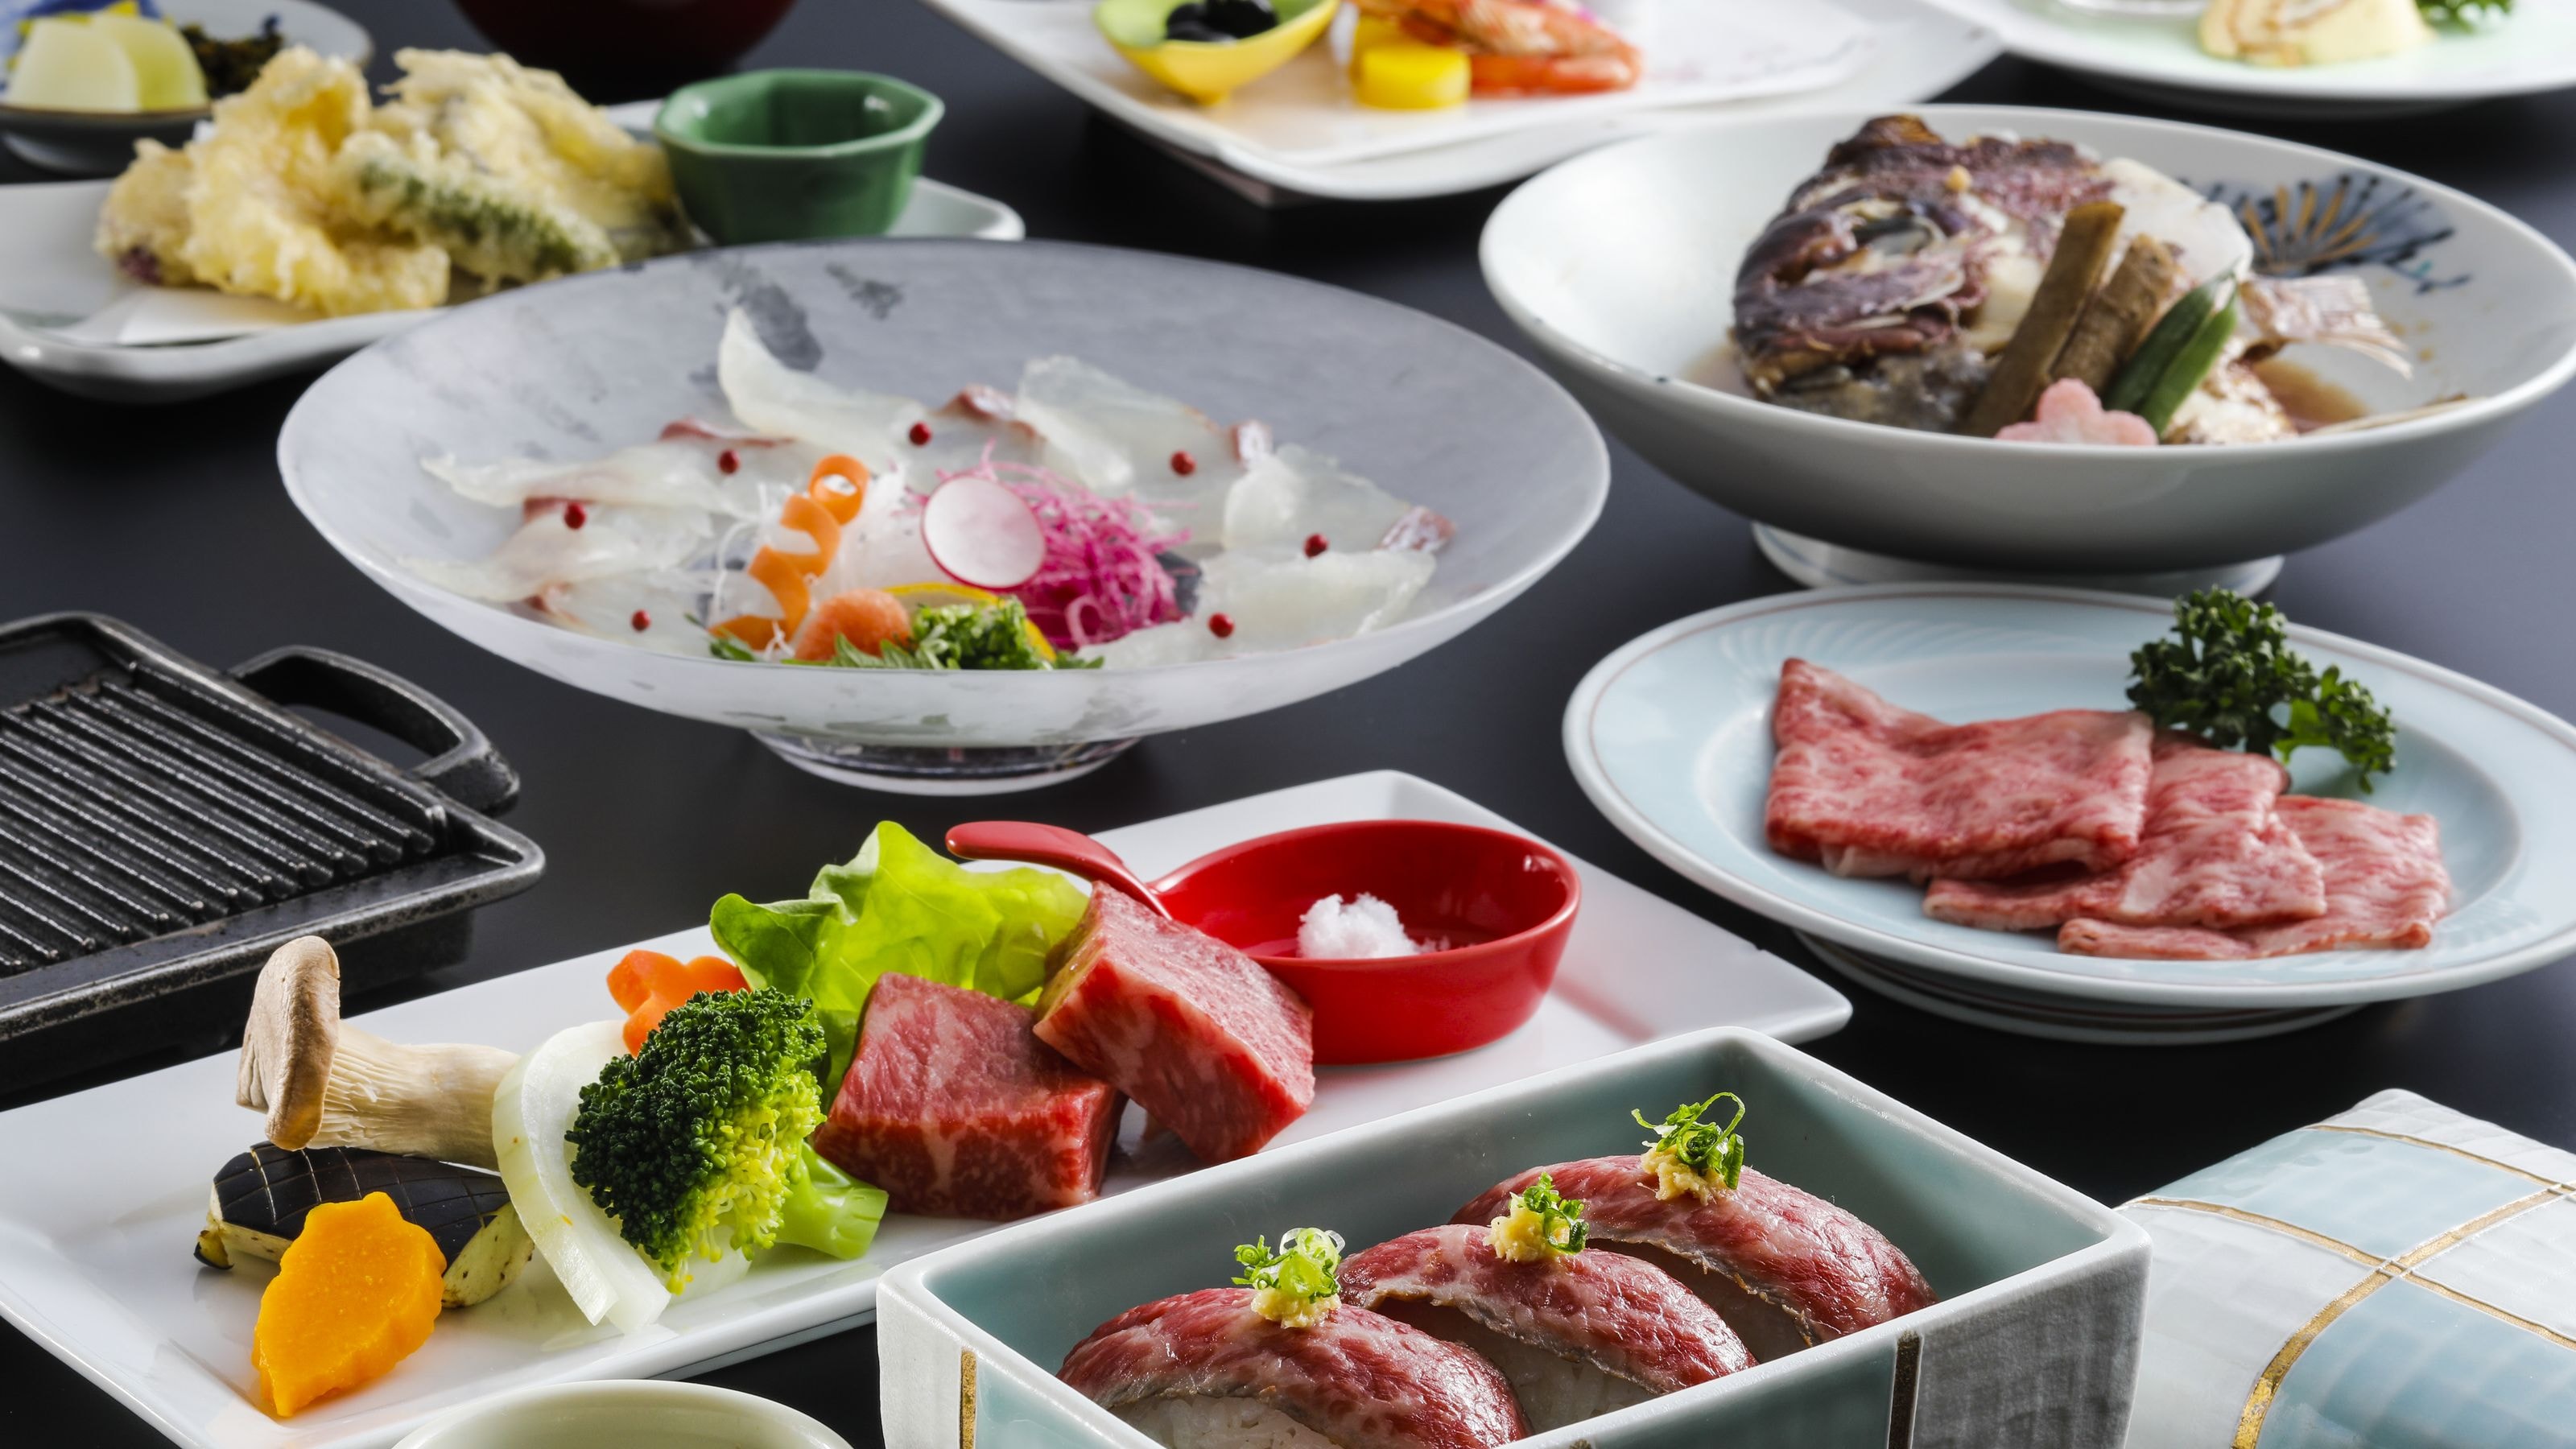 * 三重伊予牛肉怀石料理示例：爱媛县品牌牛肉，伊予牛肉“丝味”使用！请享受难以购买的宝石